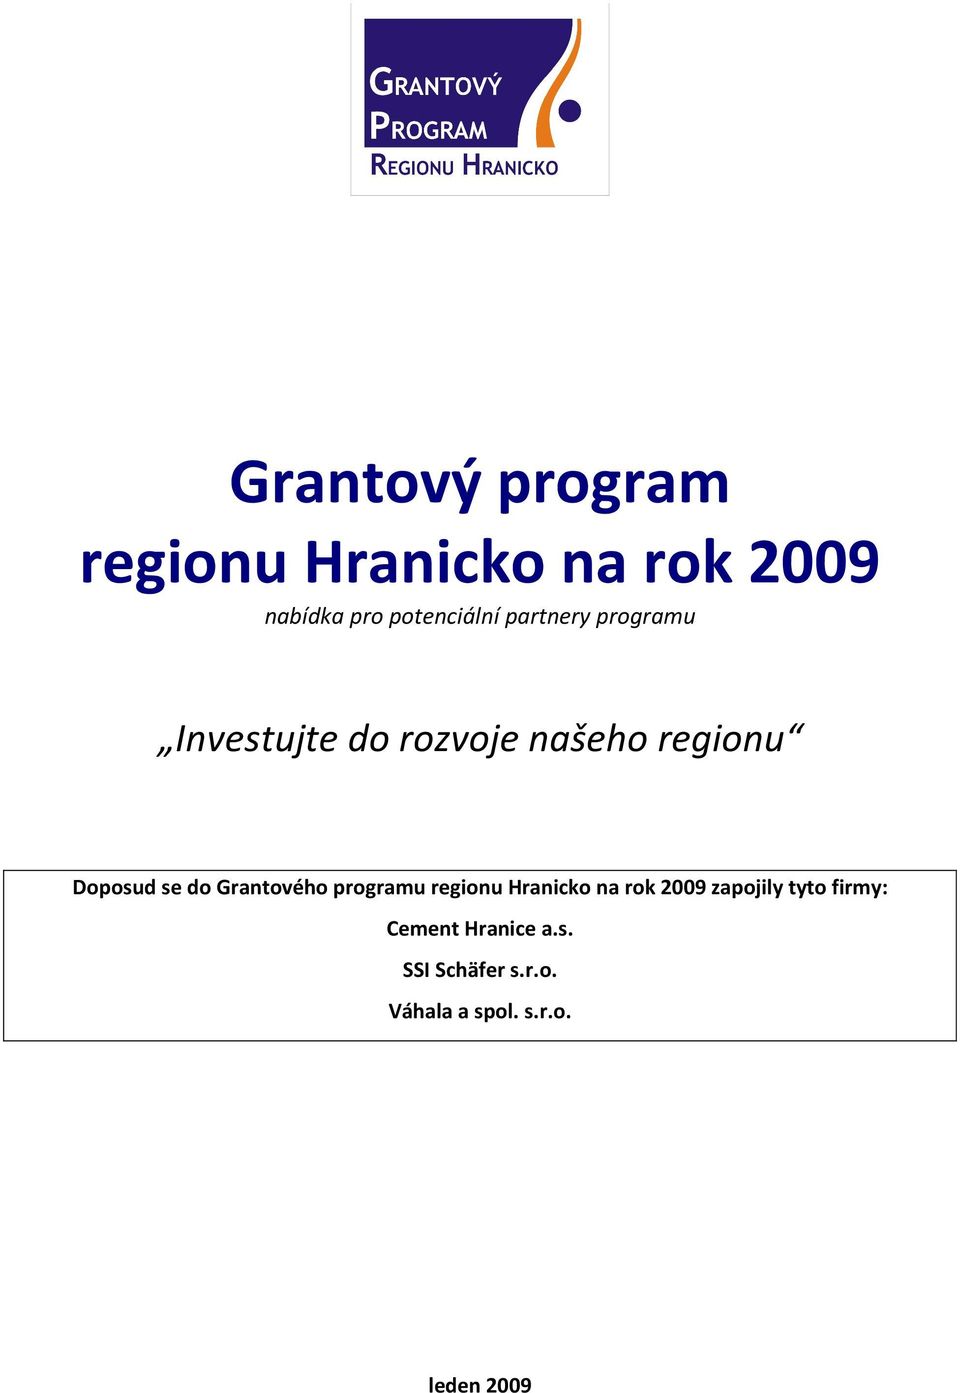 Grantového programu regionu Hranicko na rok 2009 zapojily tyto firmy: